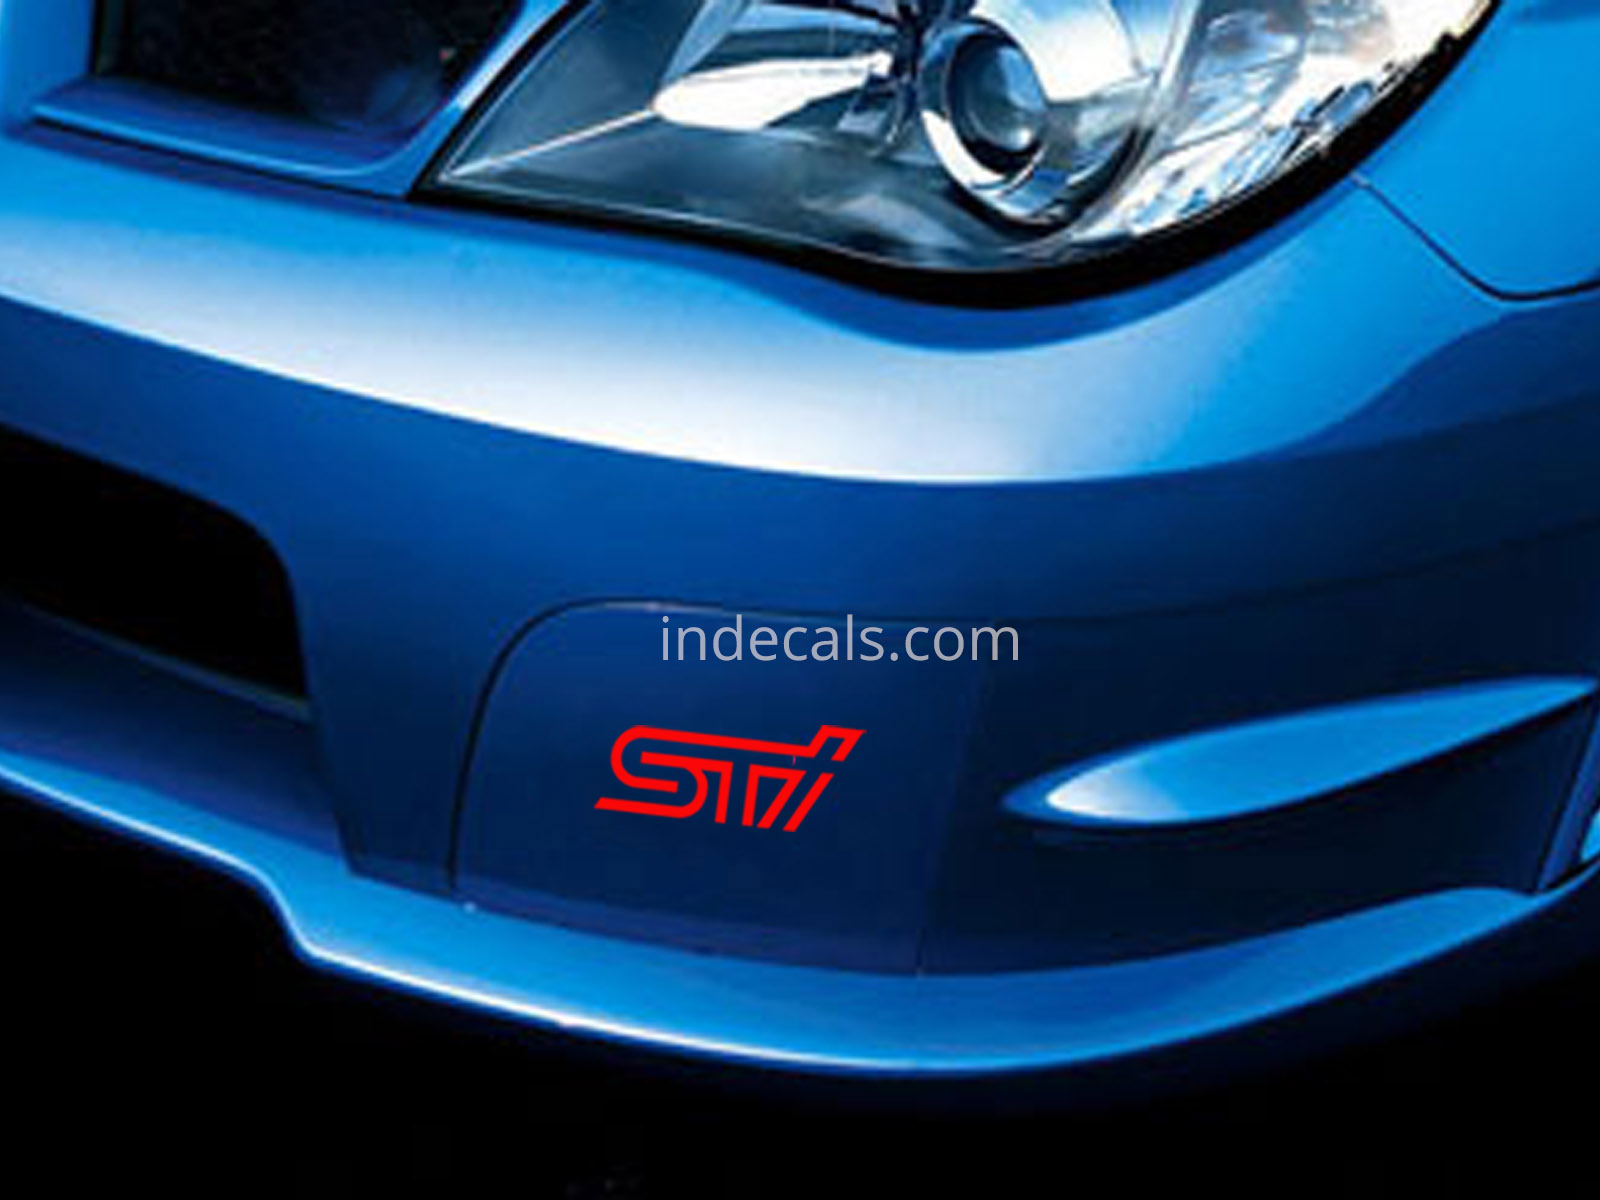 2 x Subaru STI stickers for Front Bumper - Red